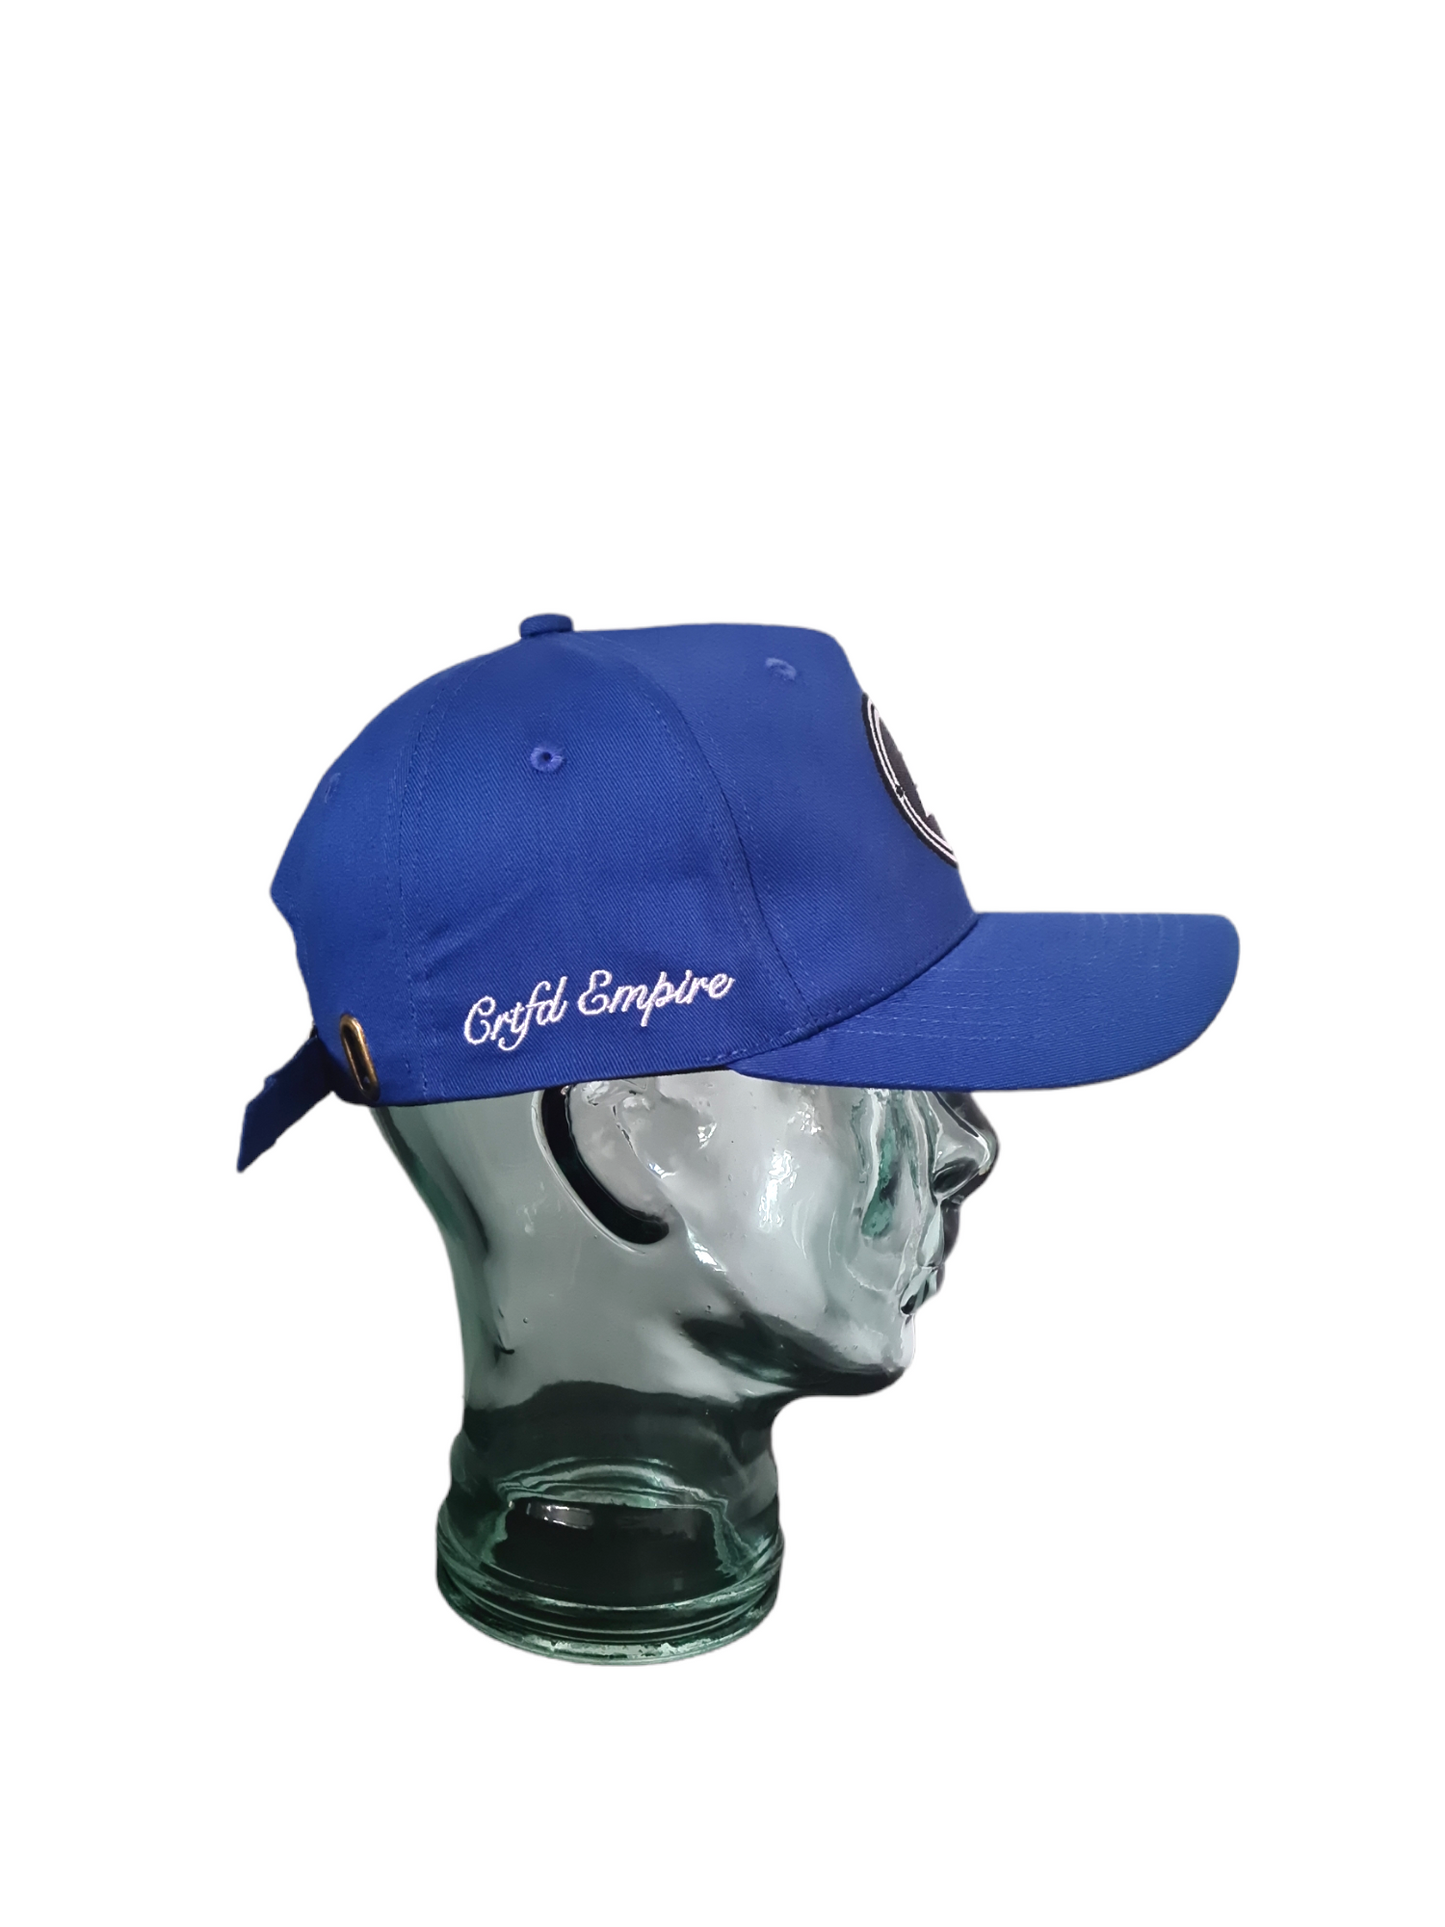 Royal Blue pyramid logo baseball cap